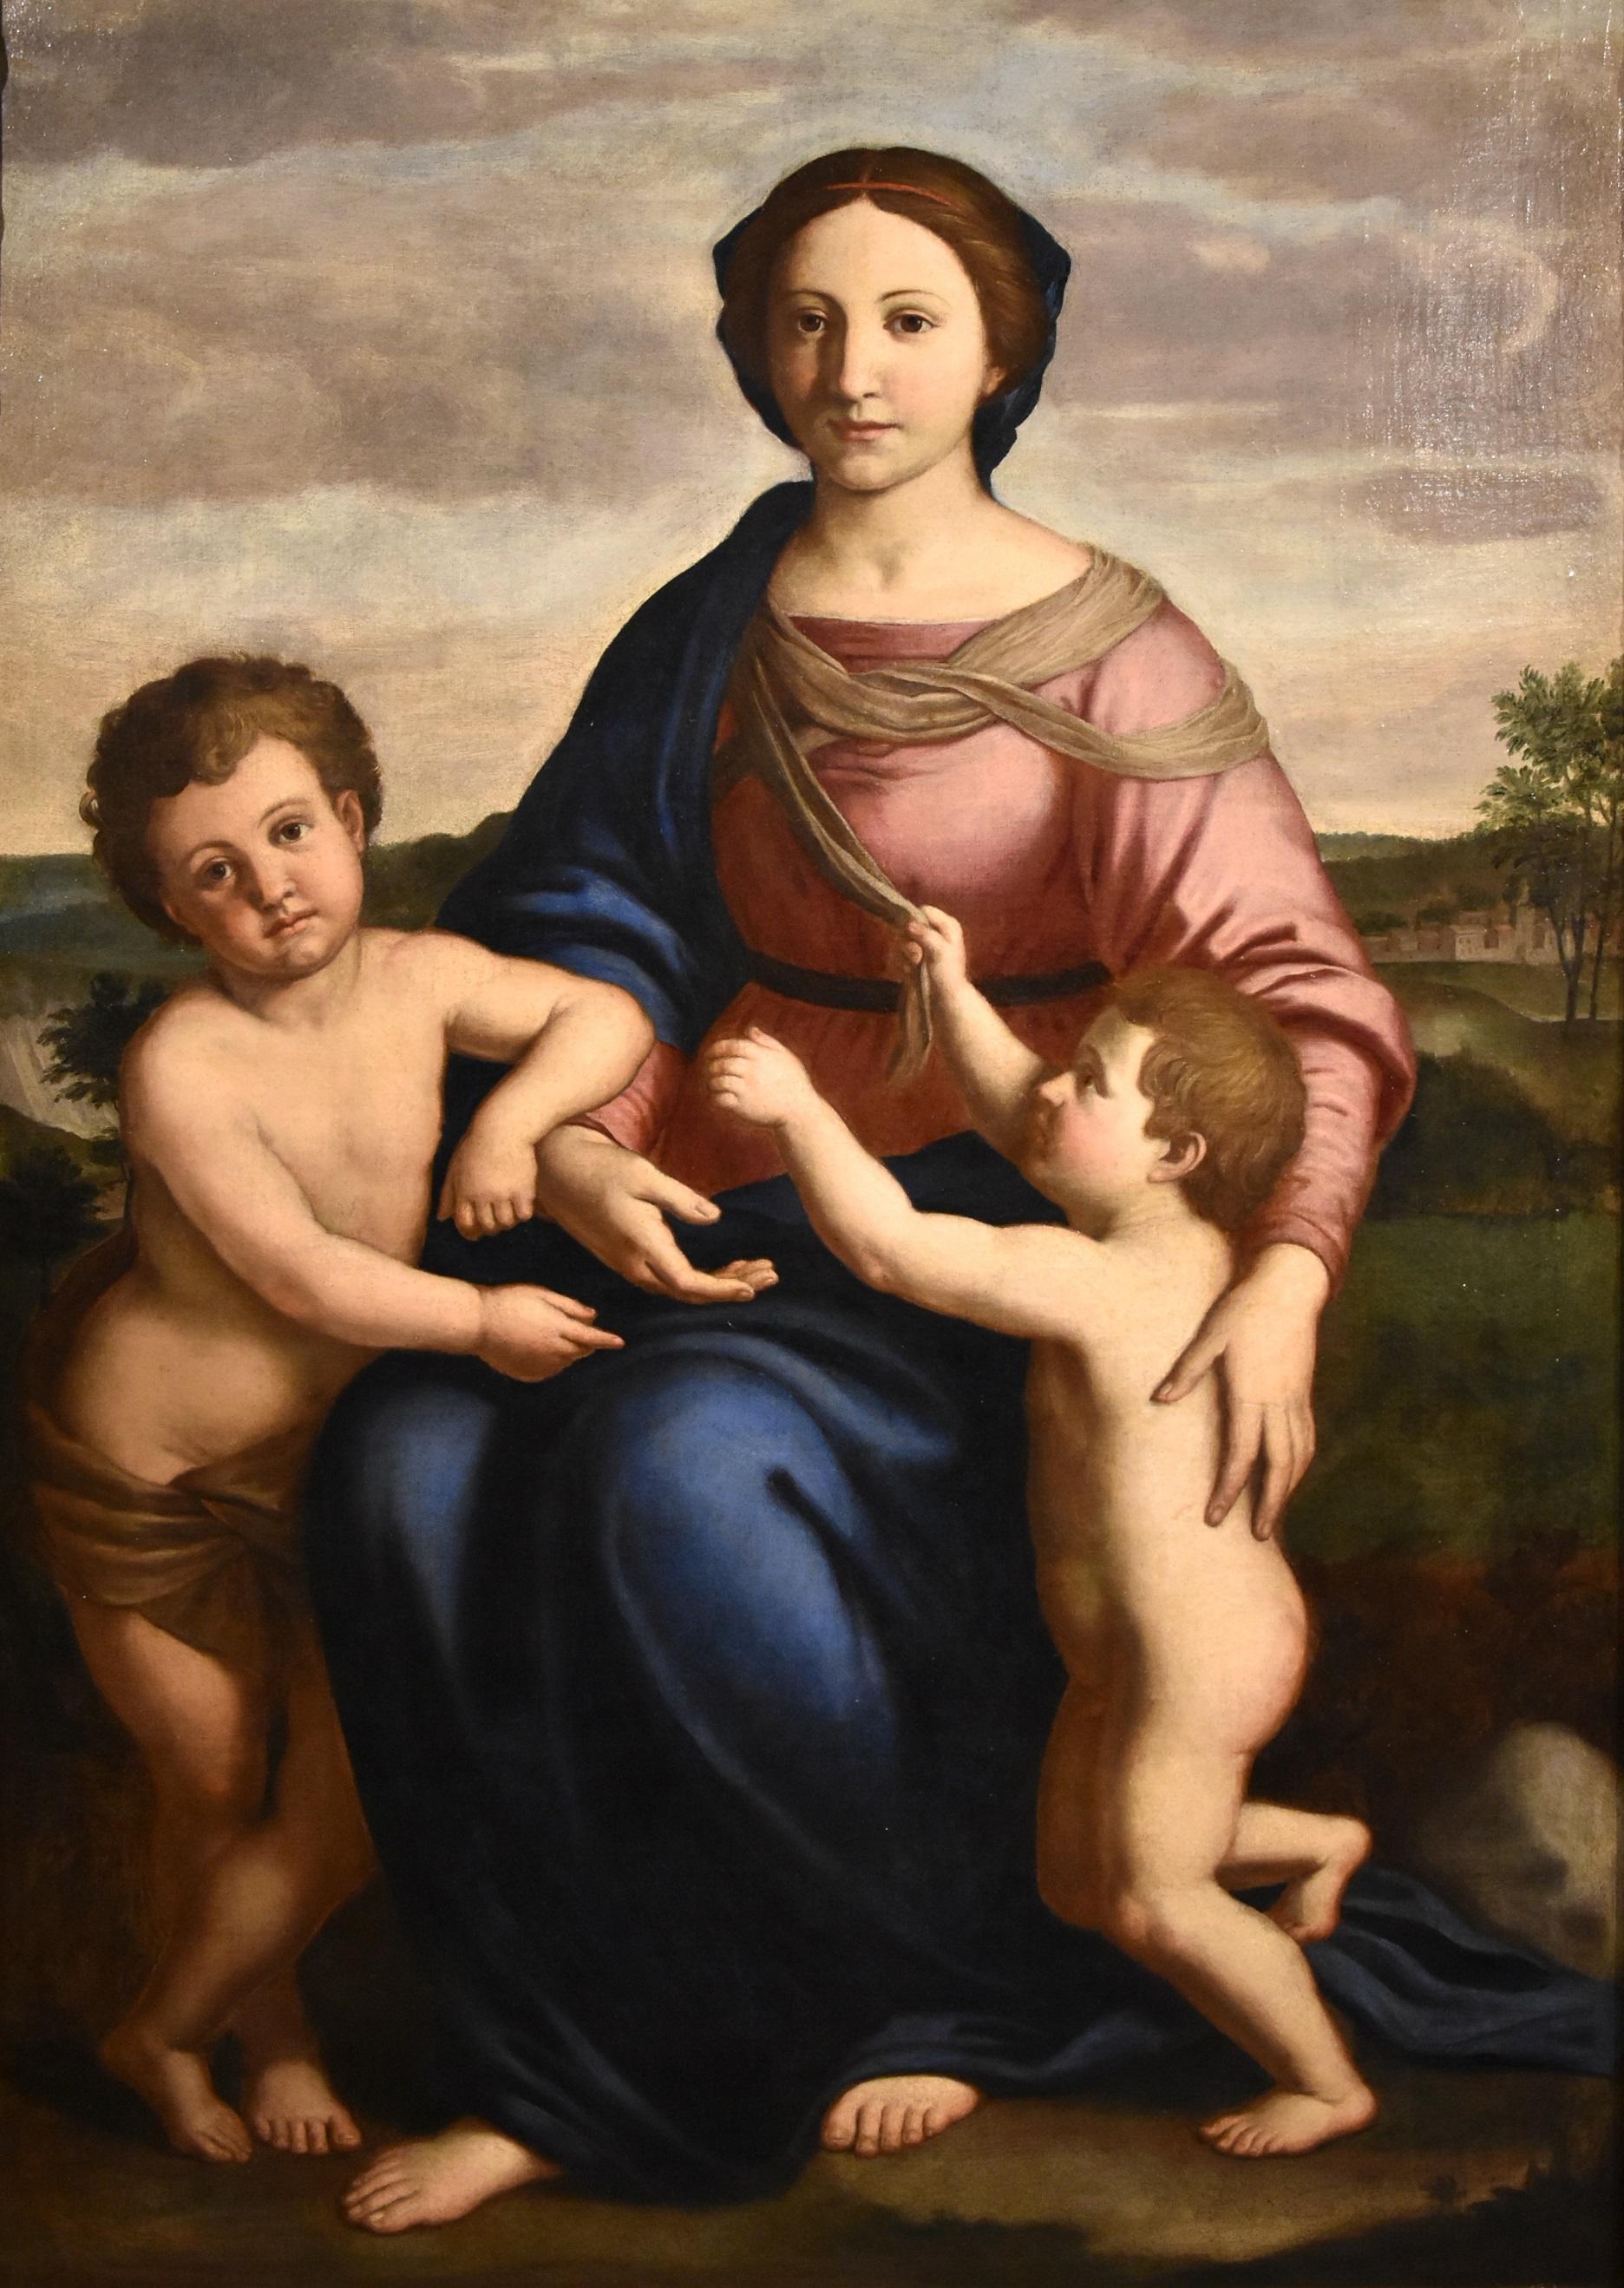 Salvi Virgin Madonna Paint Old master Oil on canvas 17th Century Raffaello Italy - Old Masters Painting by Giovanni Battista Salvi, known as Sassoferrato